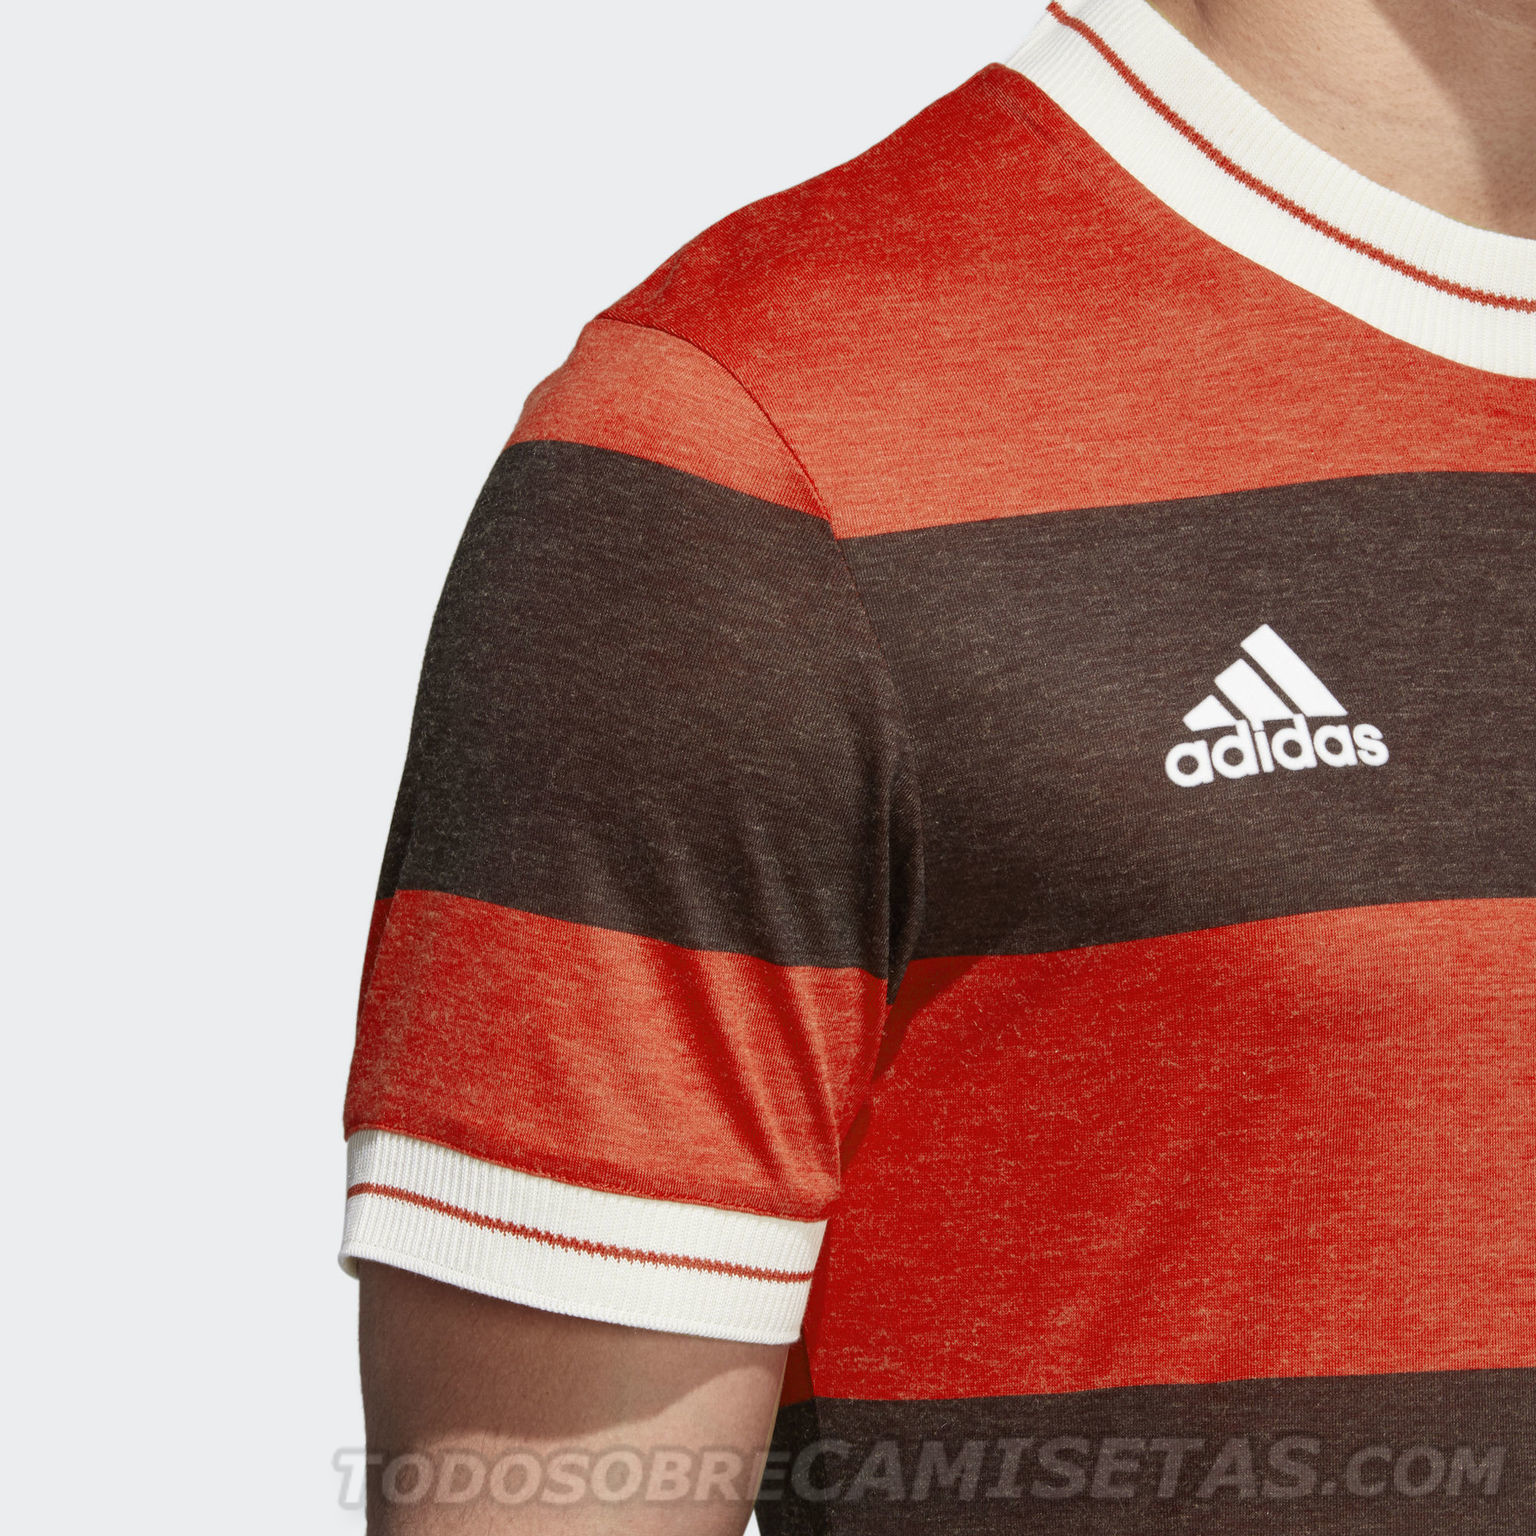 Flamengo Icon Jersey